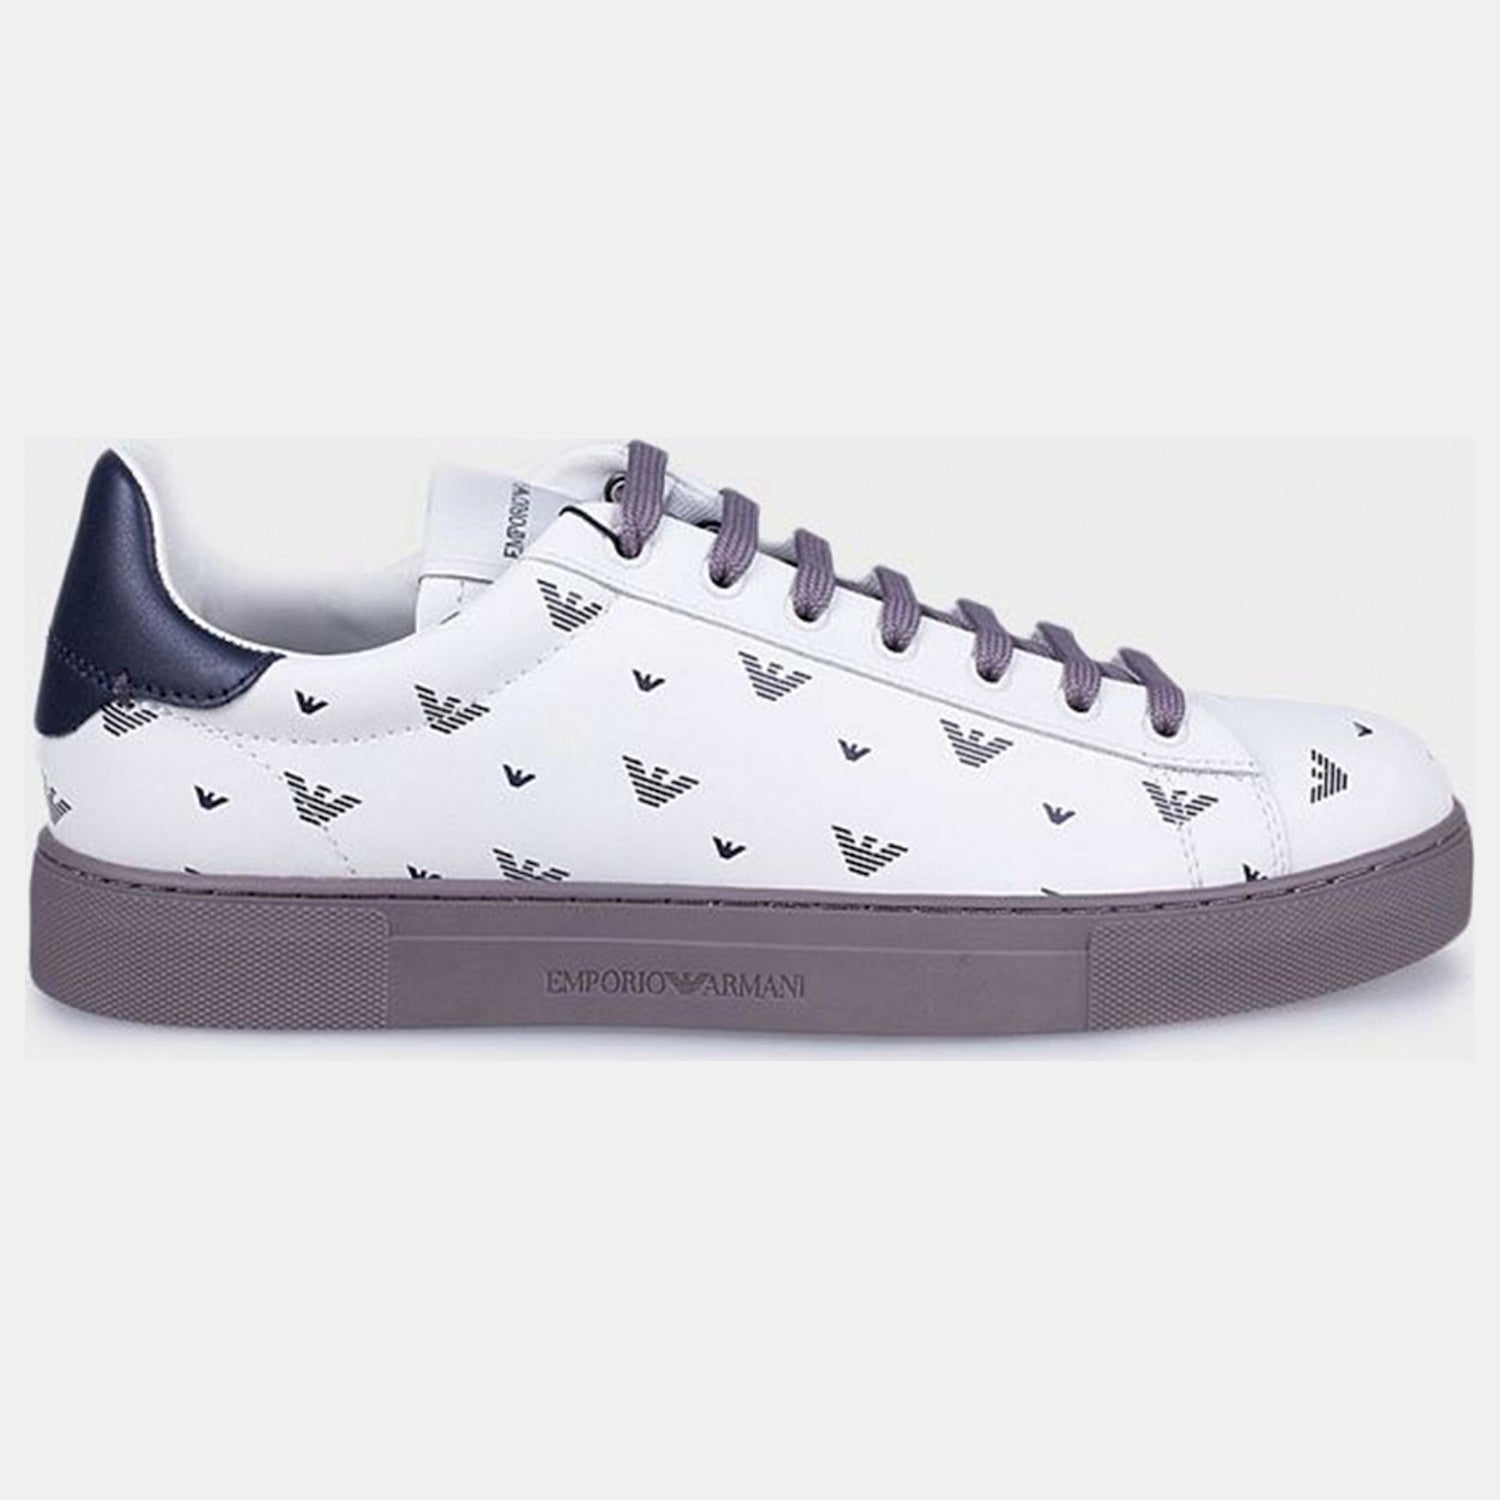 Emporio Armani Sapatilhas Sneakers Shoes X4x565 Xn181 White Grey Branco Cinza_shot6